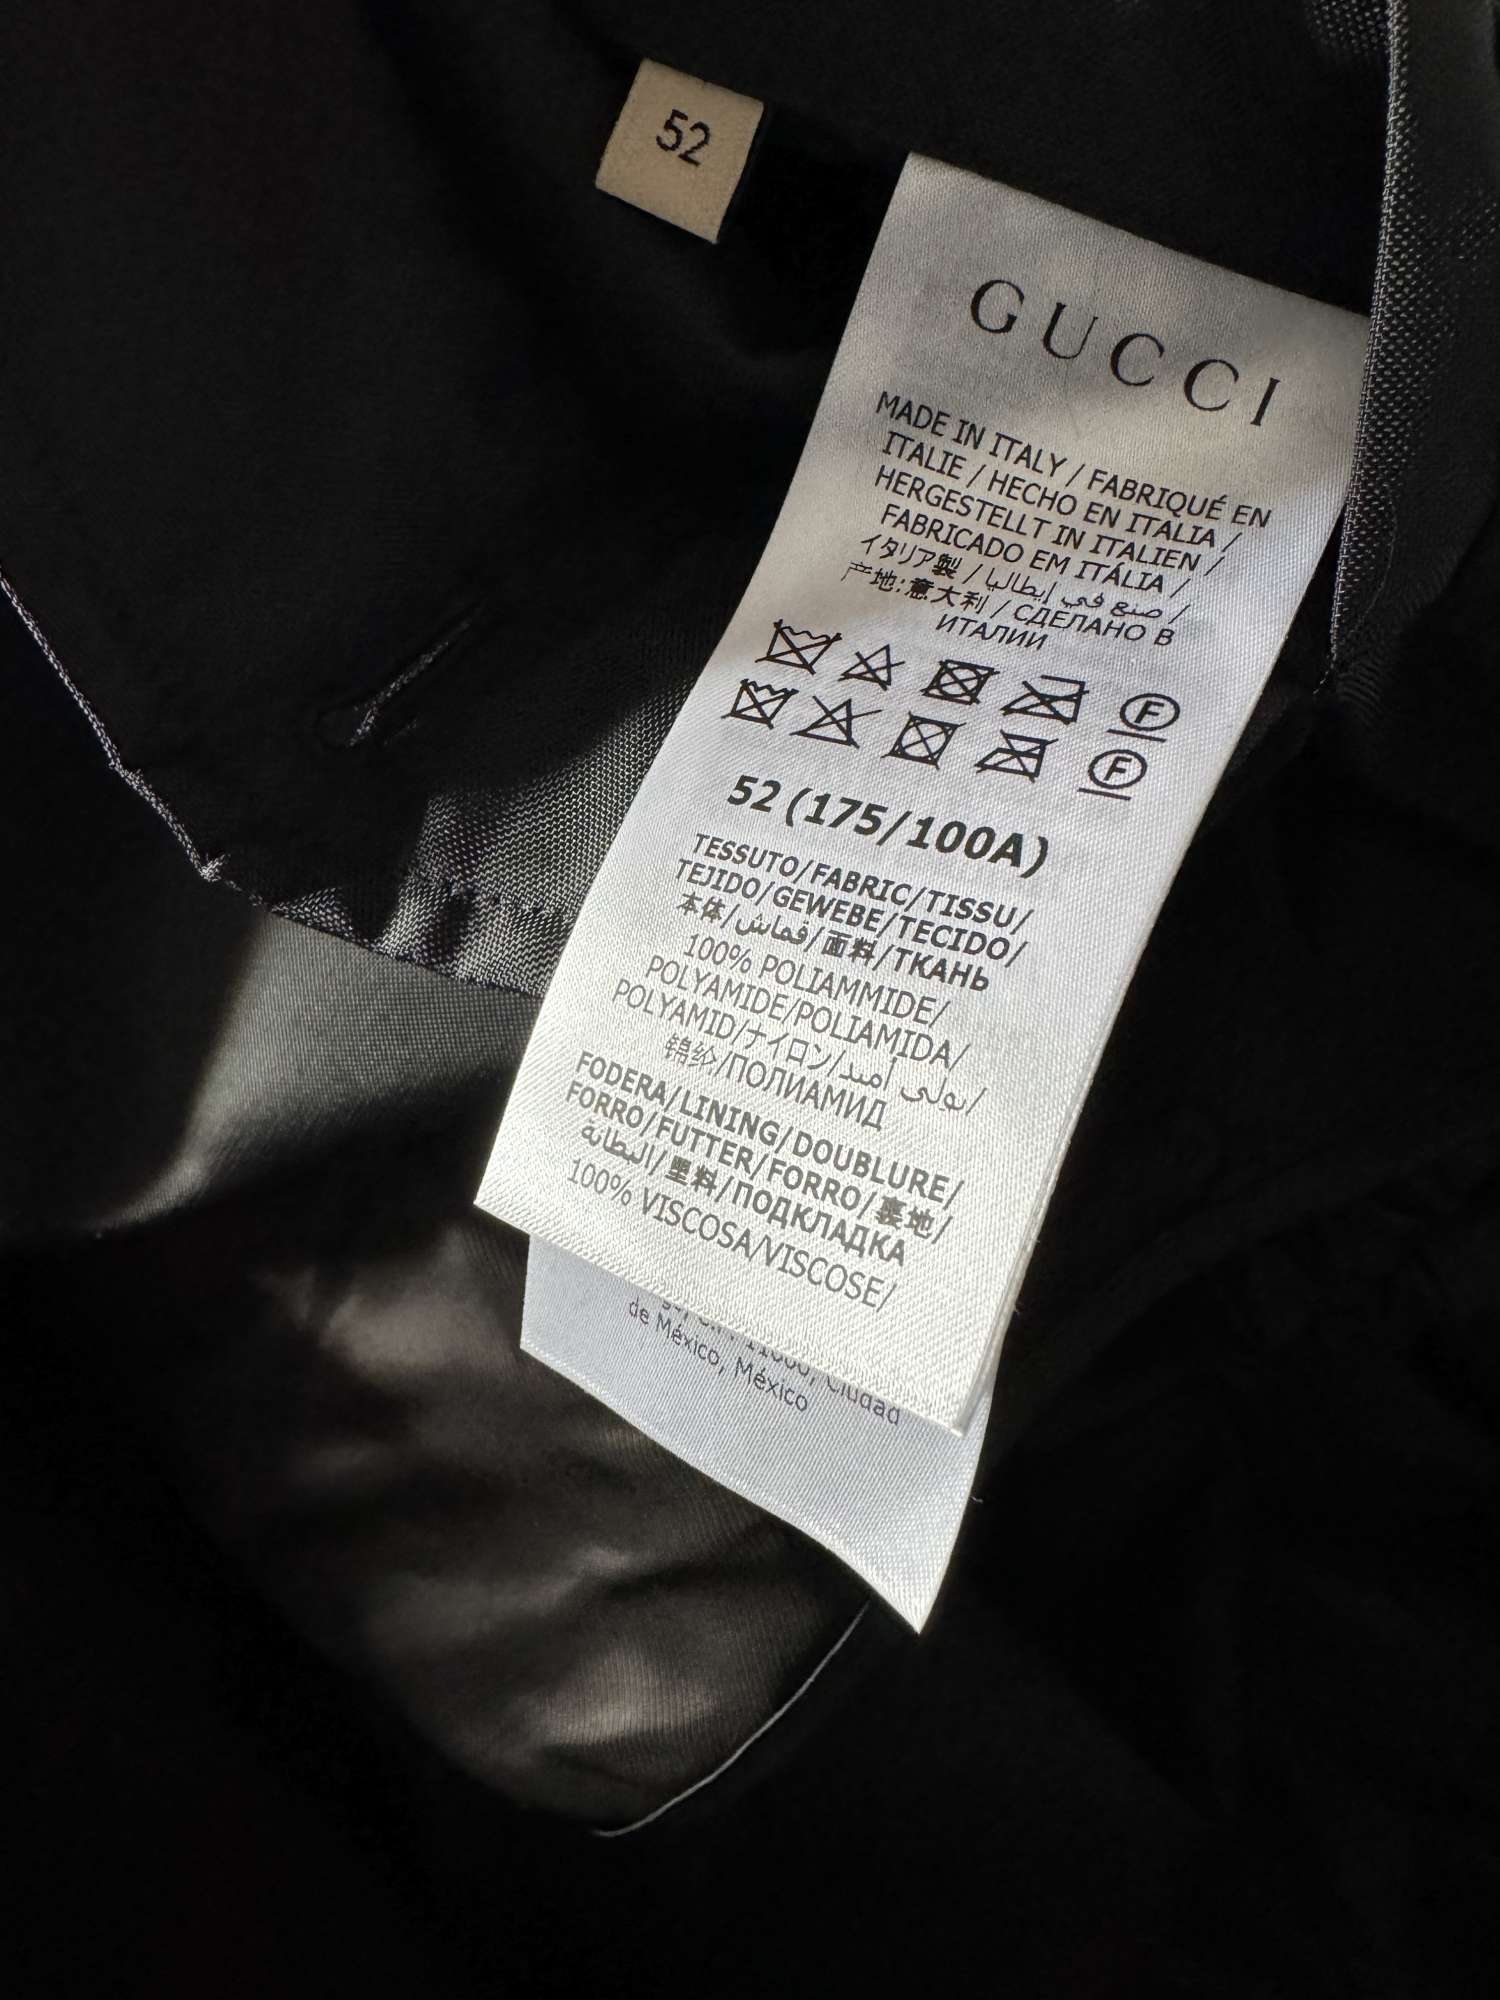 Gucci panska letna bunda velkost 52